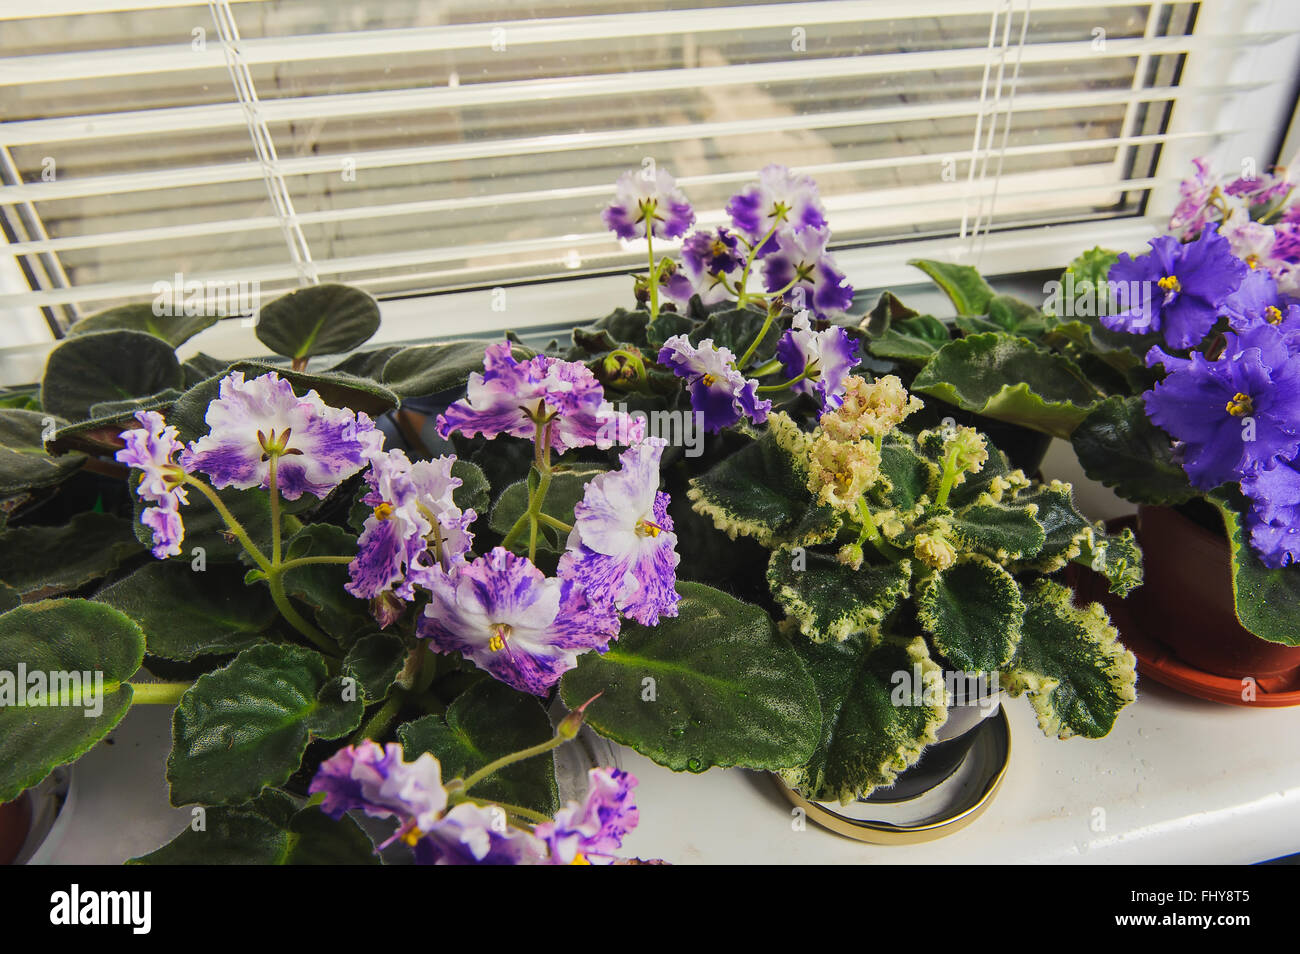 African Violet oder Saintpaulia auf dem Hintergrund der Fenster mit Jalousie, Rollladen, Zimmerpflanzen. Ansicht von oben. Stockfoto